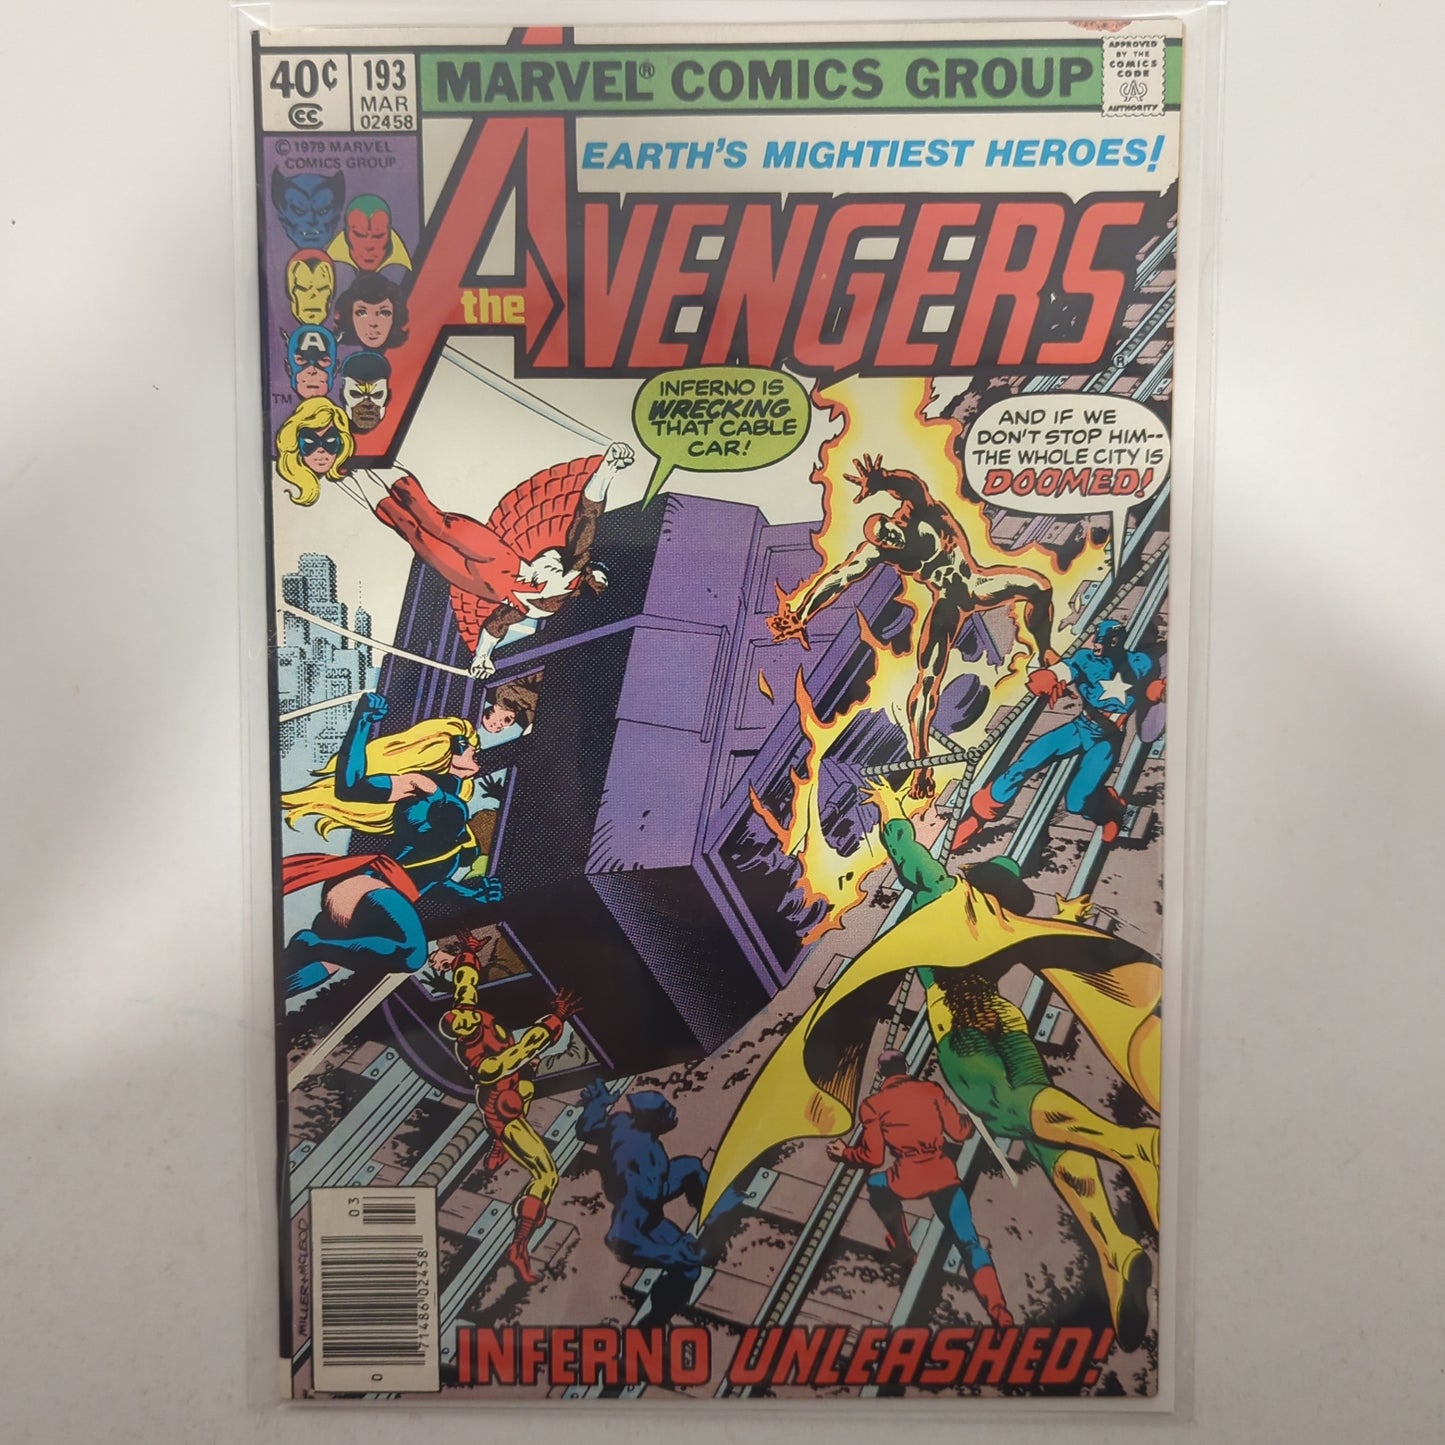 Avengers #193 Newsstand